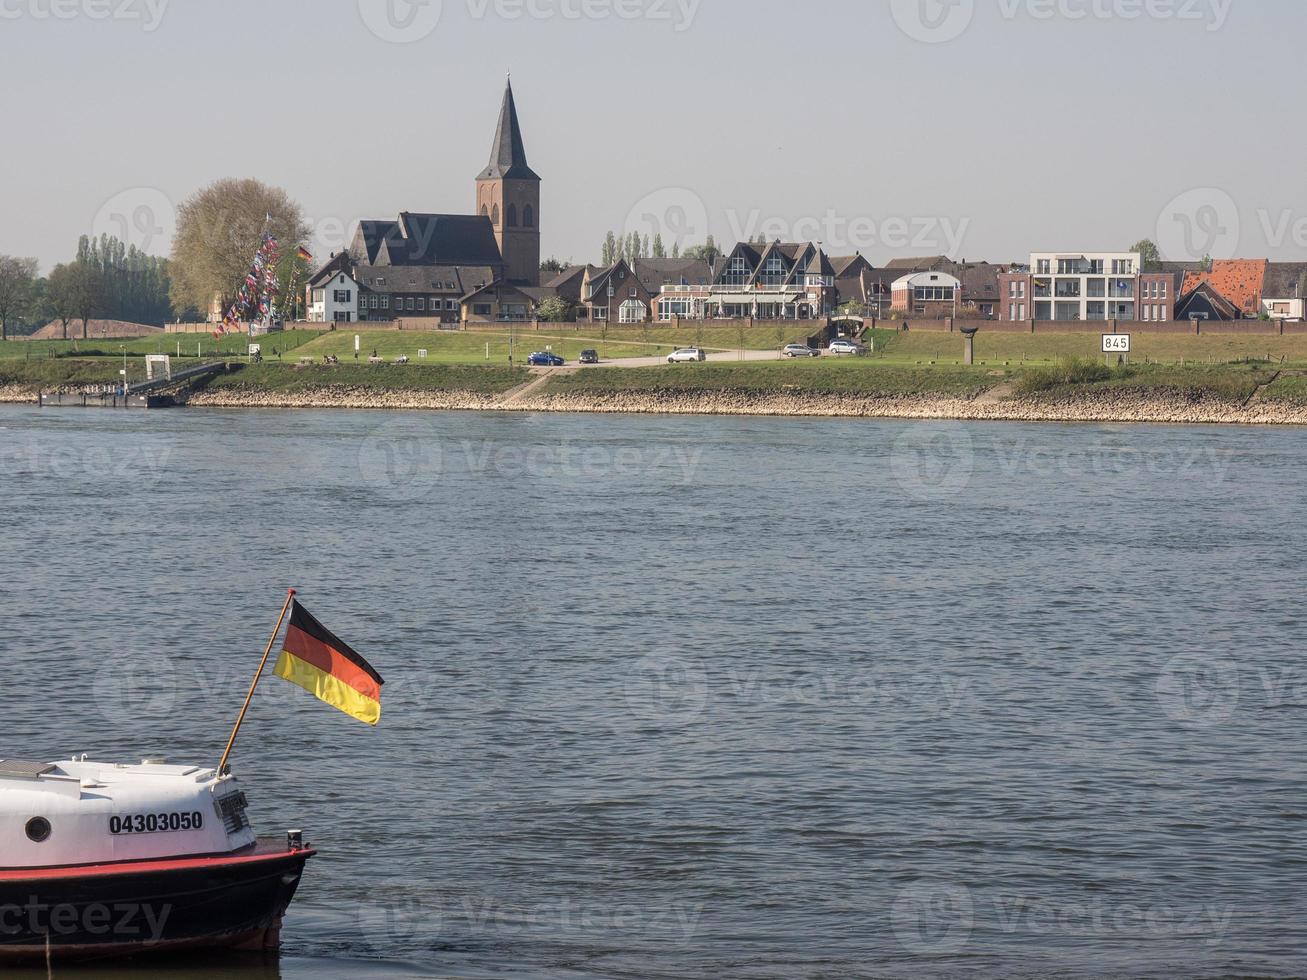 Der Rhein in Deutschland foto